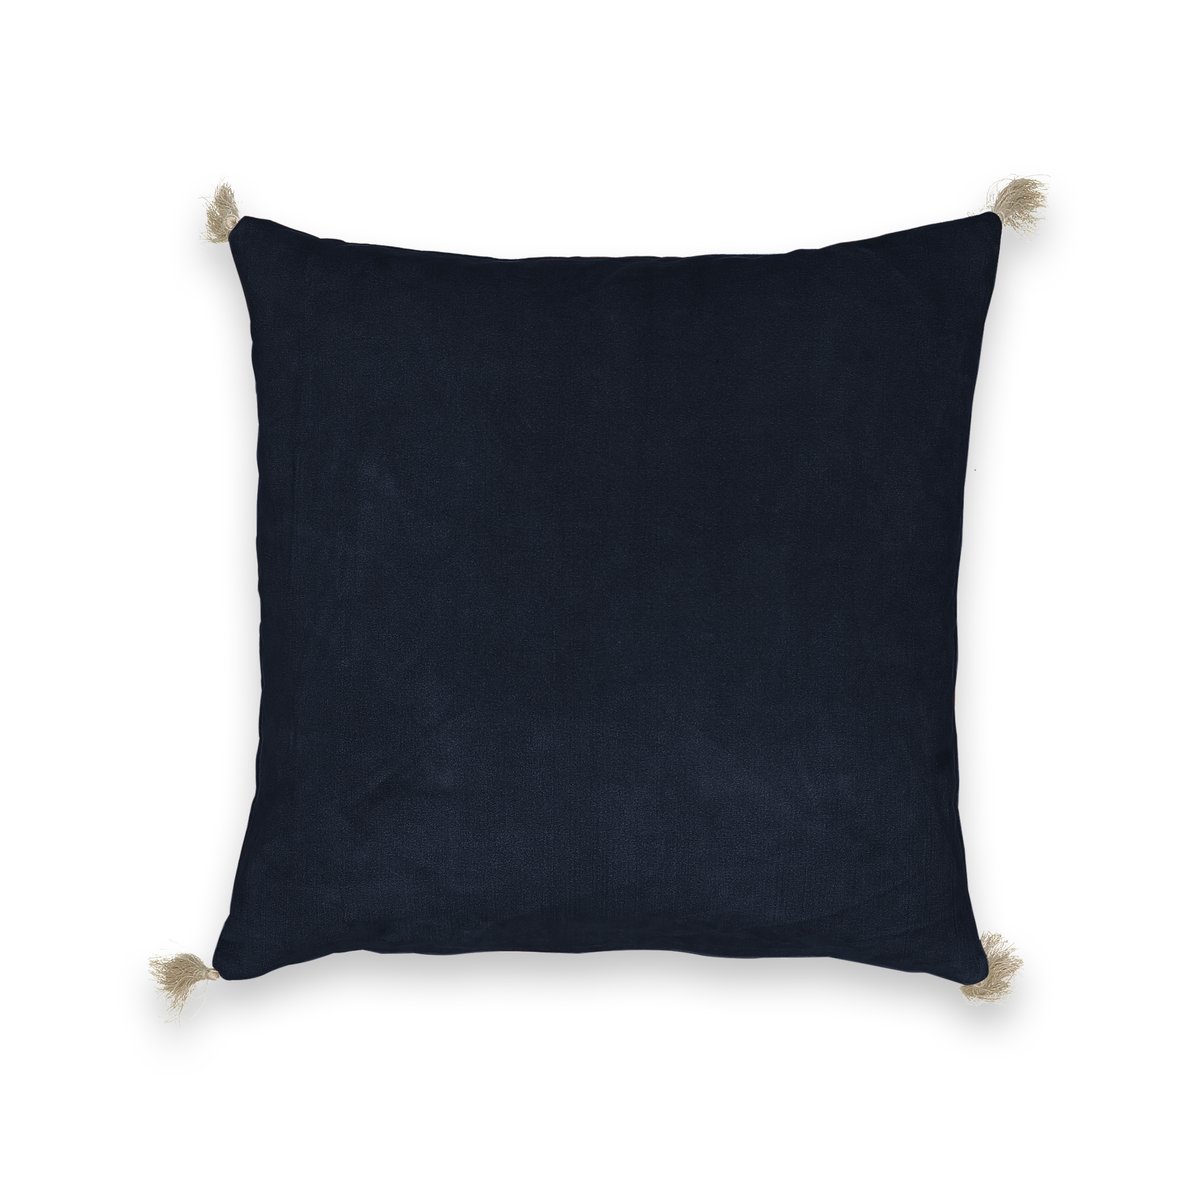 Чехол на подушку велюровый Cacolet 50 x 30 см синий чехол прямоугольный вышитый на подушку scolto 50 x 30 см разноцветный